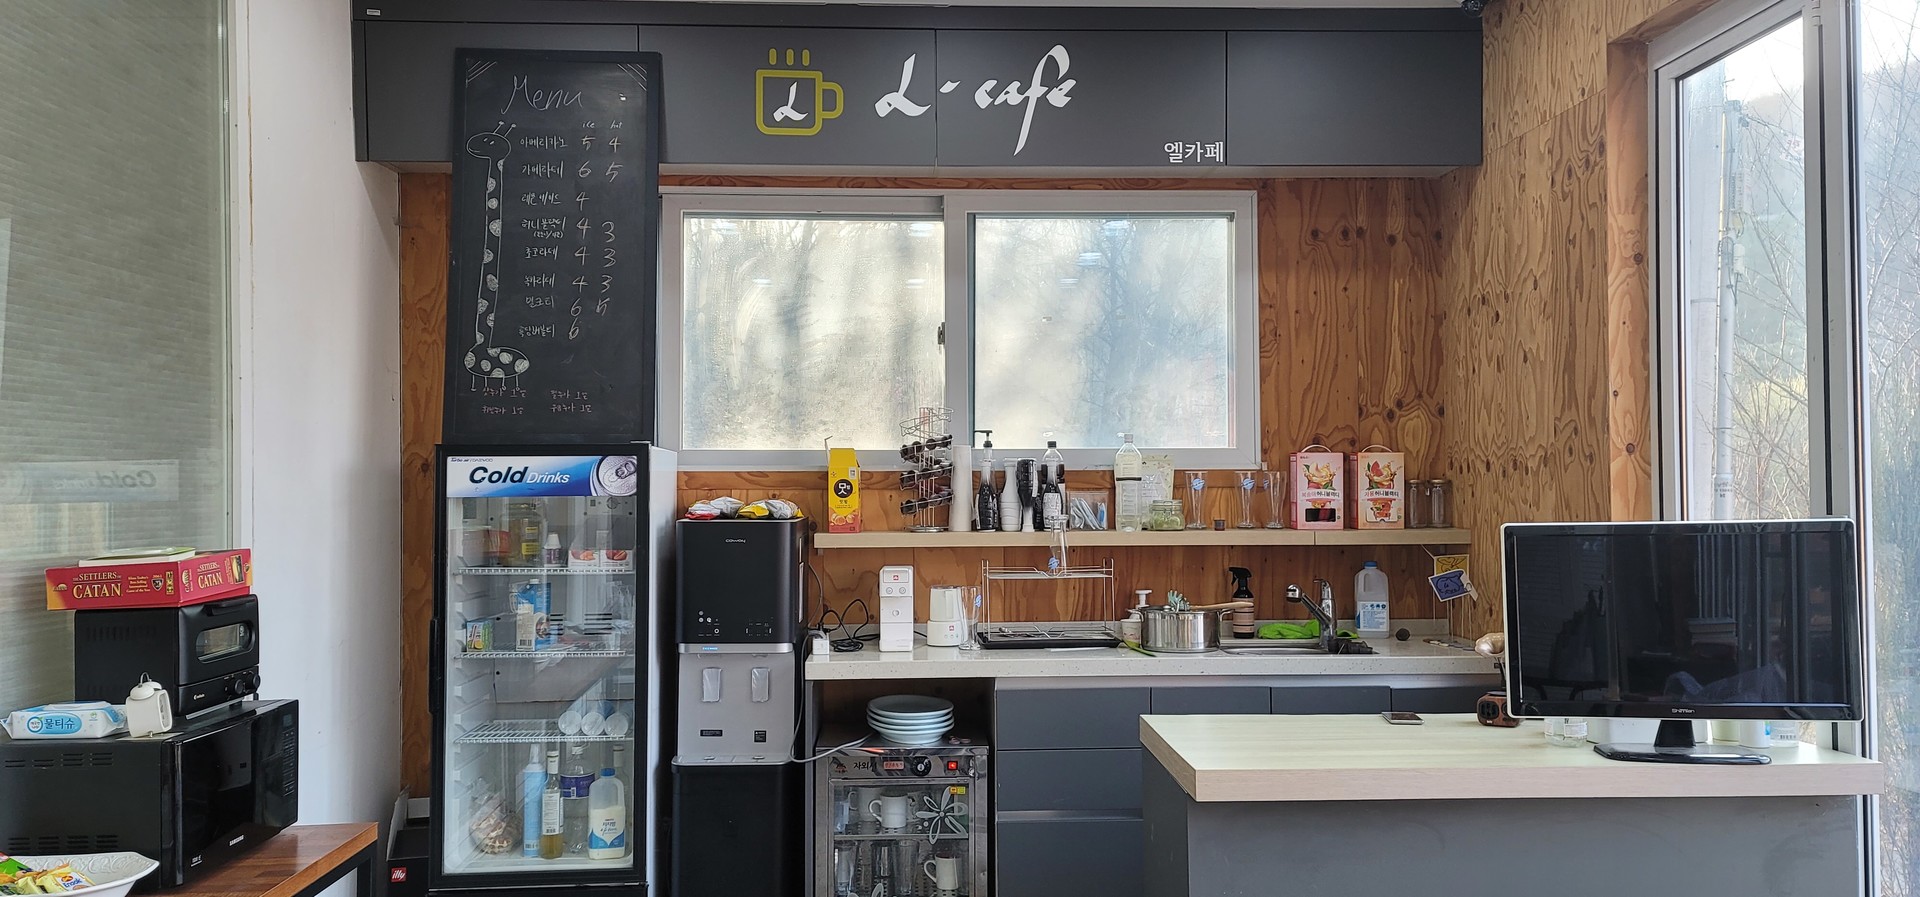 리퍼블릭 내에서 운영되고 있는 카페 L-Cafe (엘카페), 각종 음료와 디저트 판매